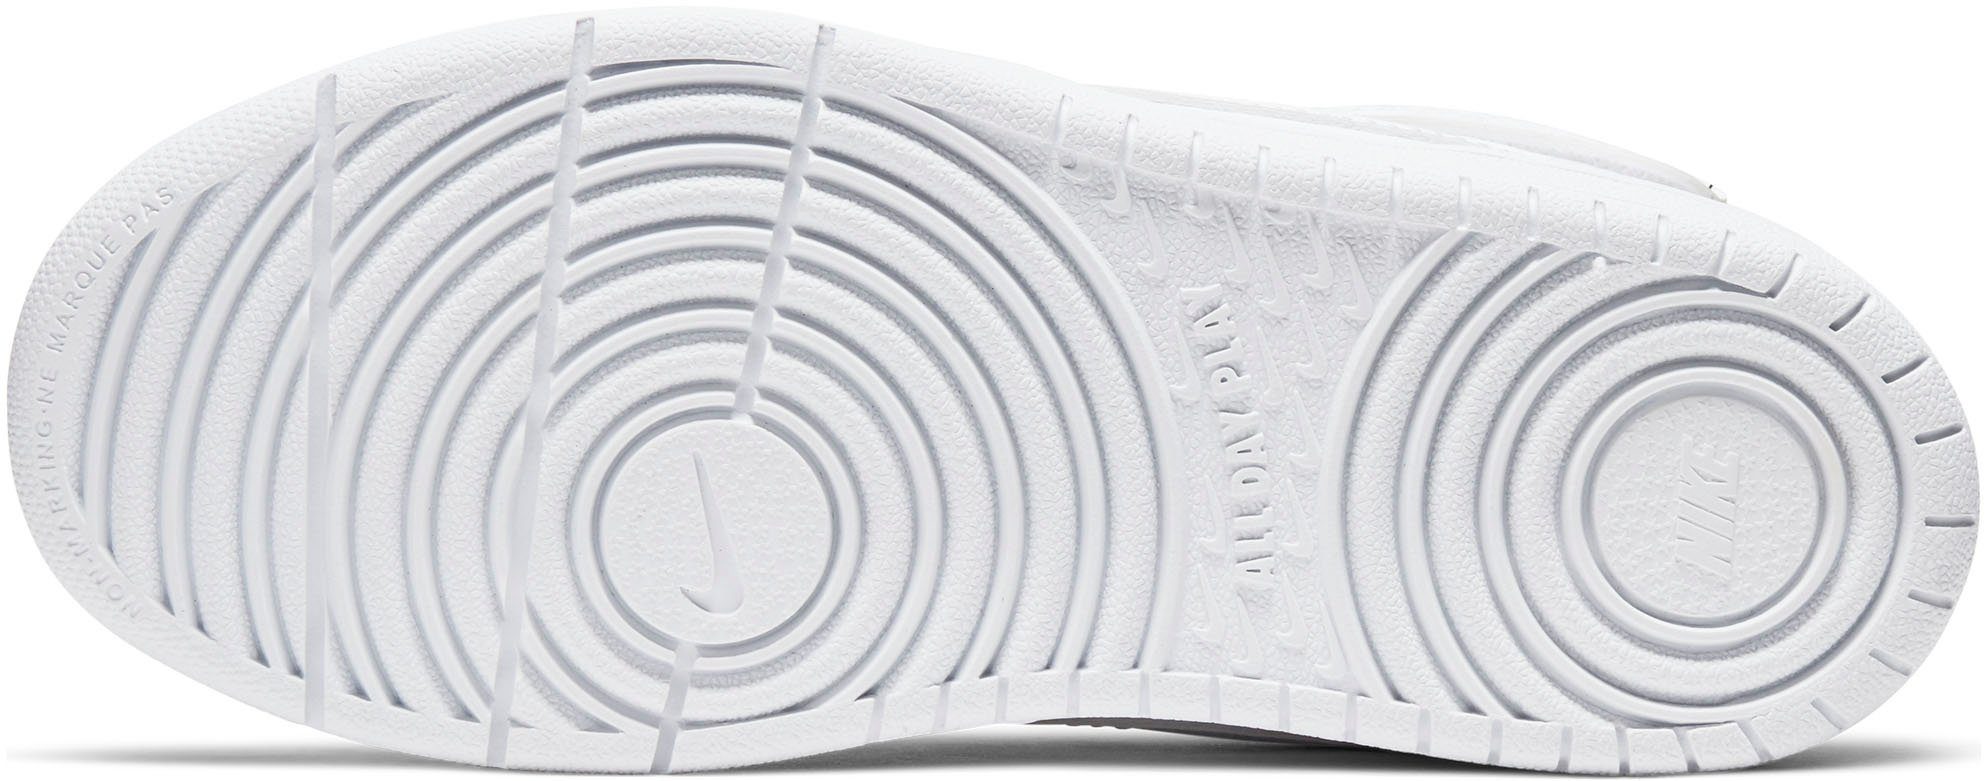 Nike Sportswear COURT BOROUGH des Force Air 1 den Spuren MID Design 2 Sneaker auf